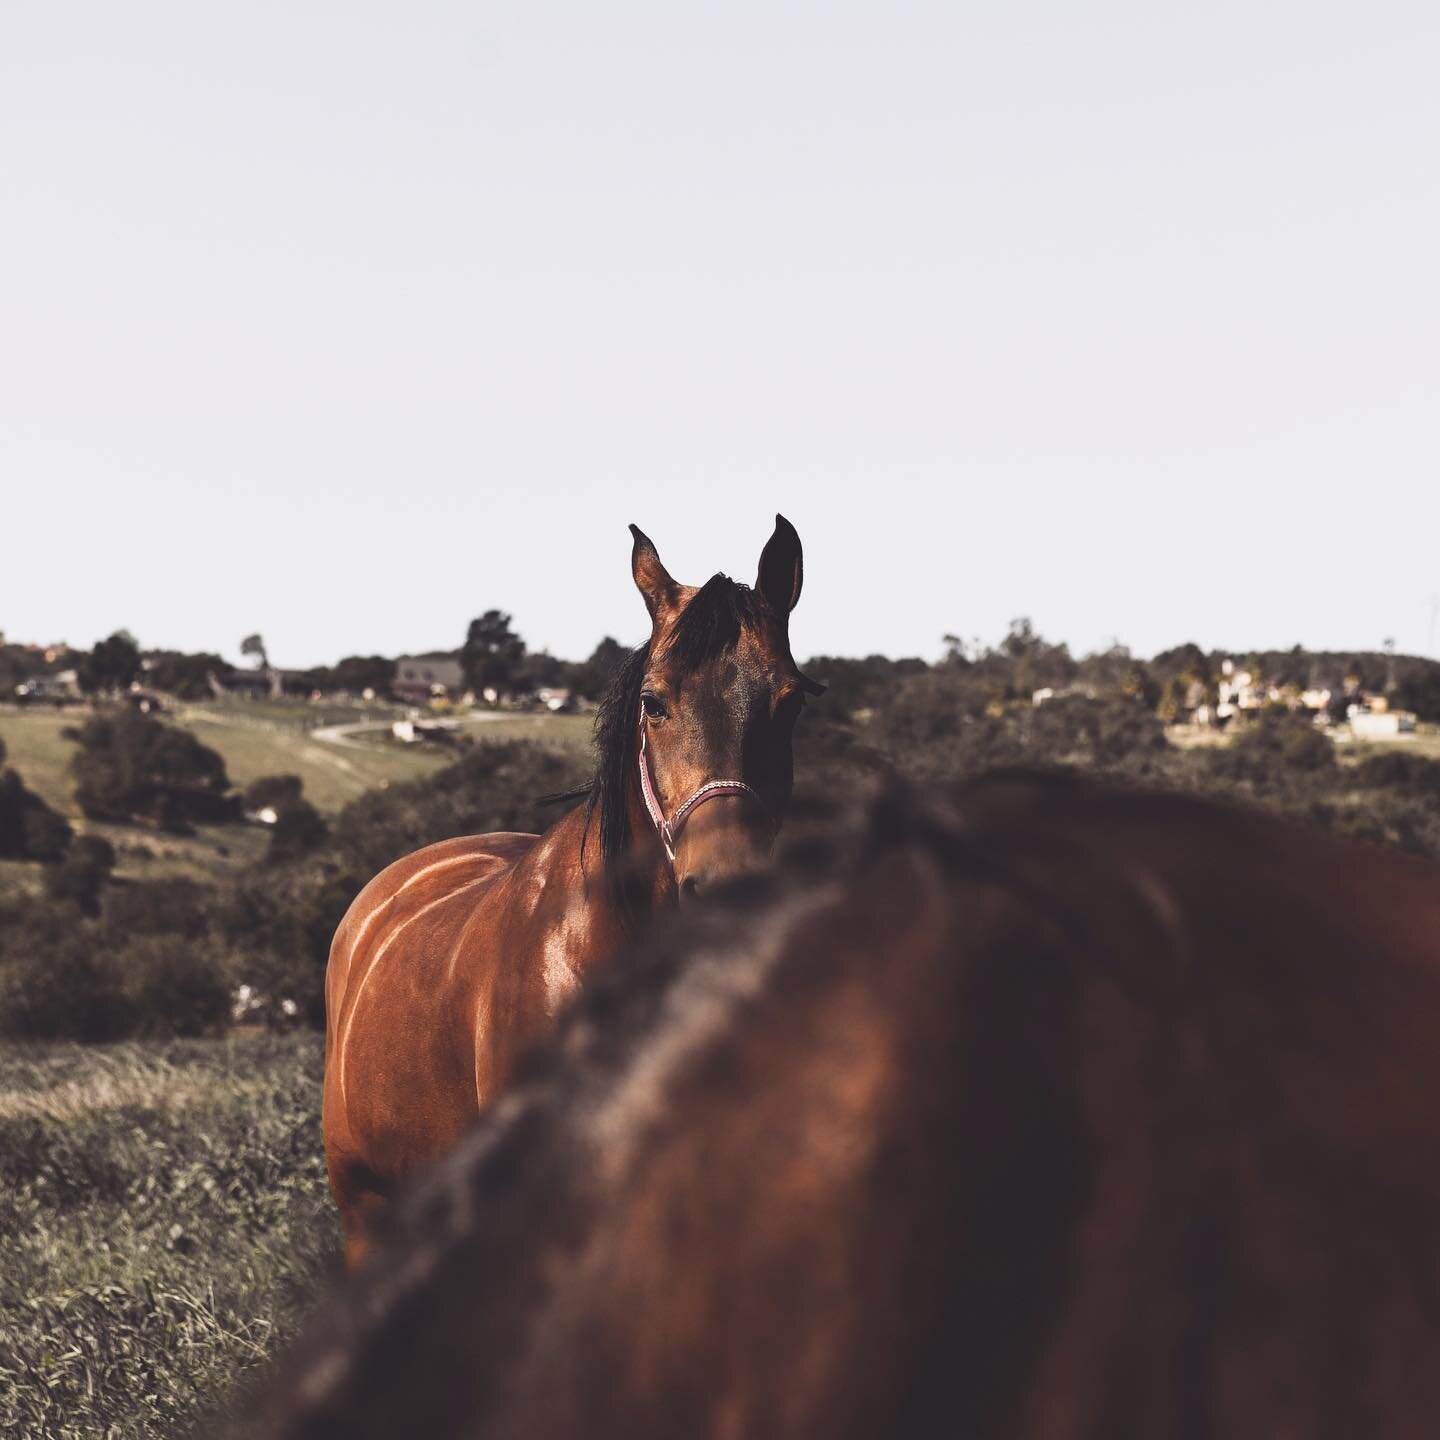 @private_i_ha ⚡️ in the pasture. #spiritanimal #arabianhorse #horsesofinstagram #horses